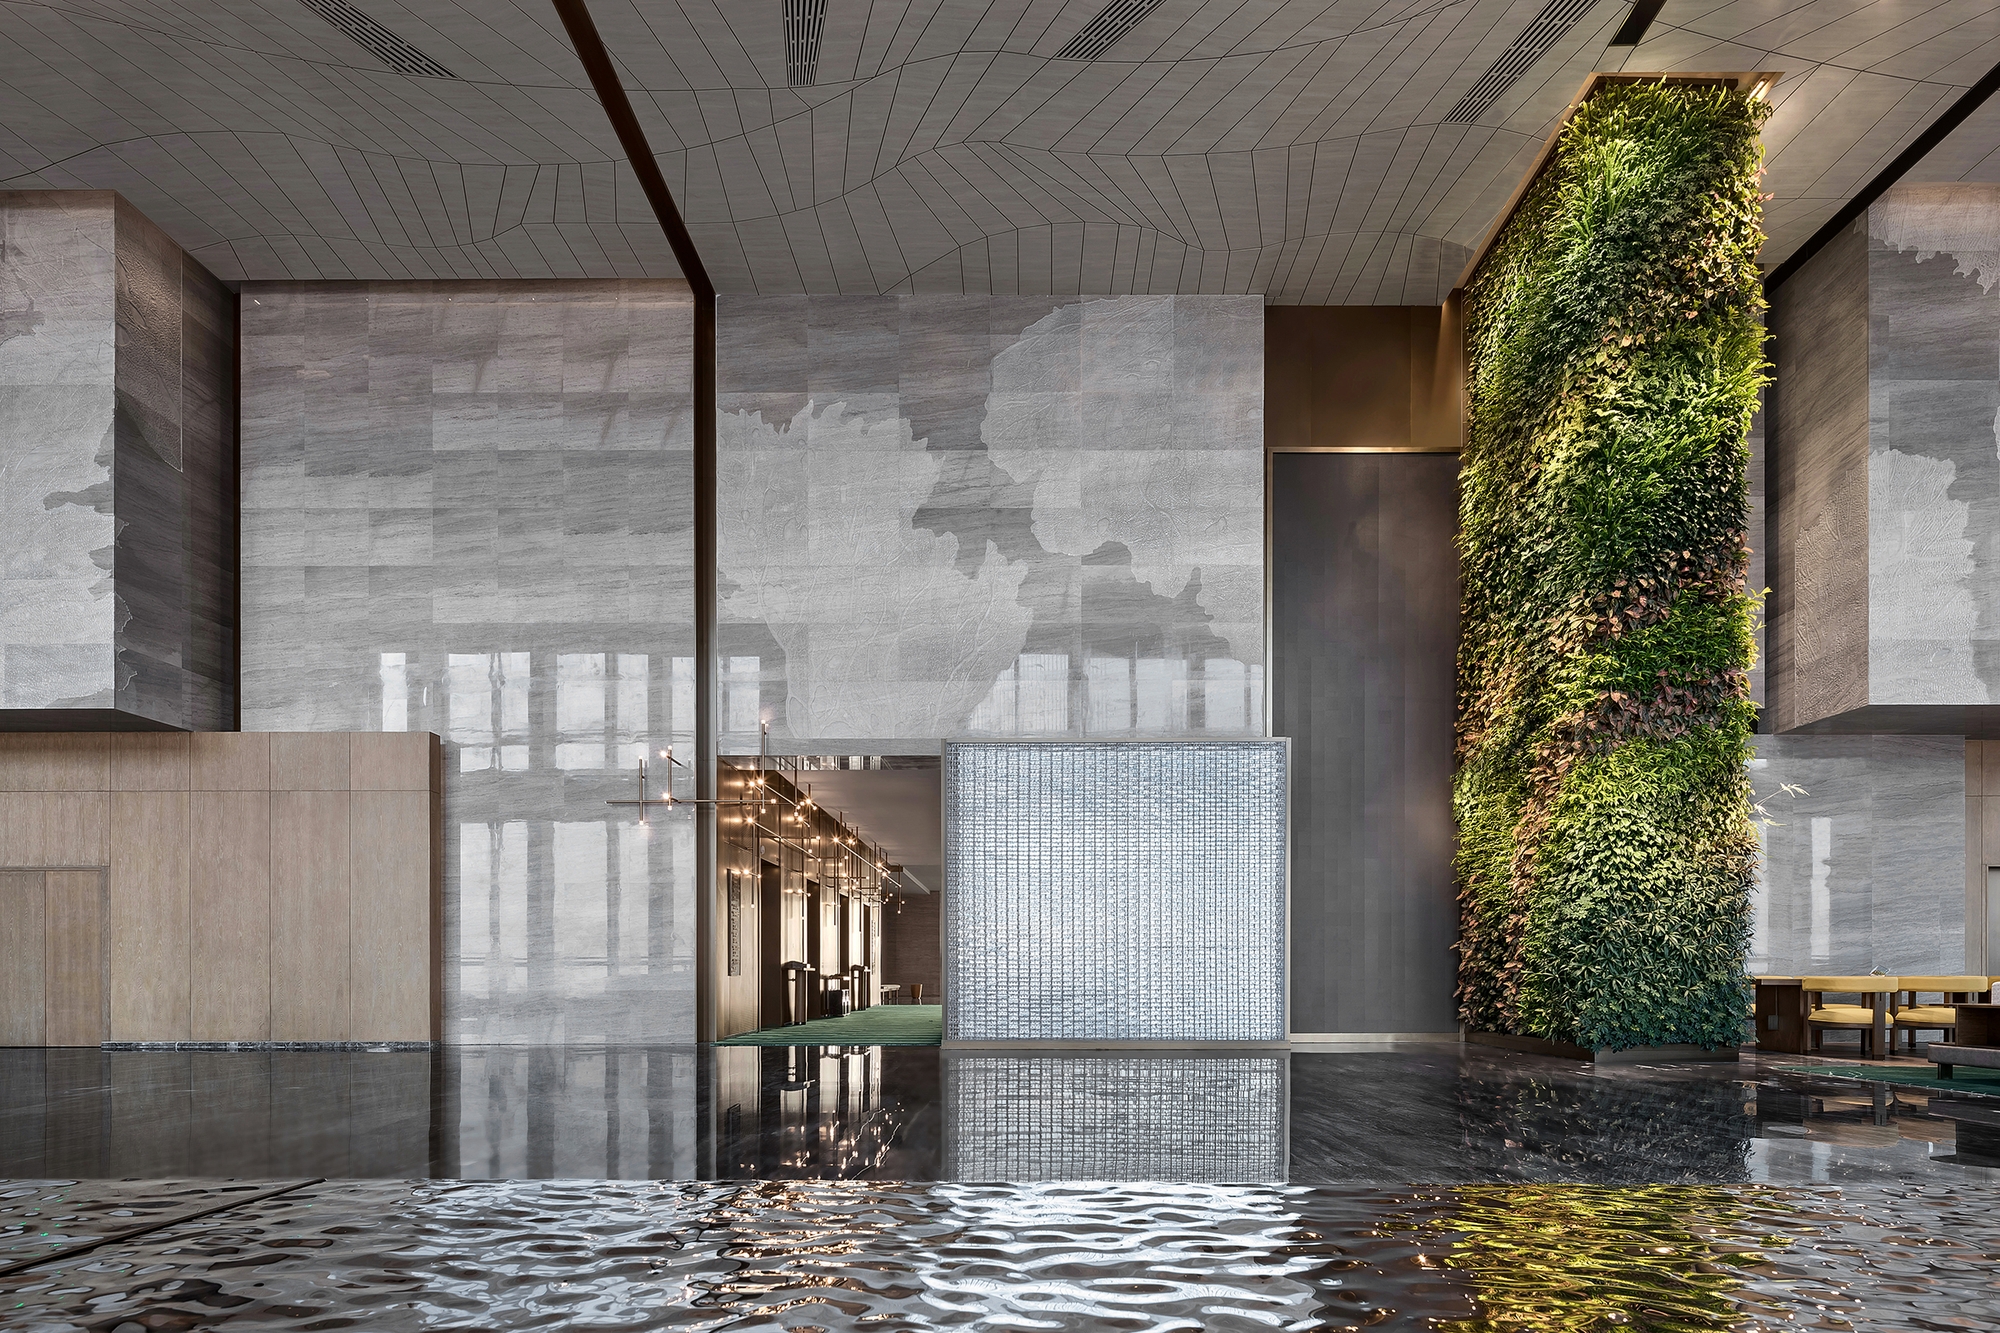 中山古镇威斯汀酒店|ART-Arrakis | 建筑室内设计的创新与灵感